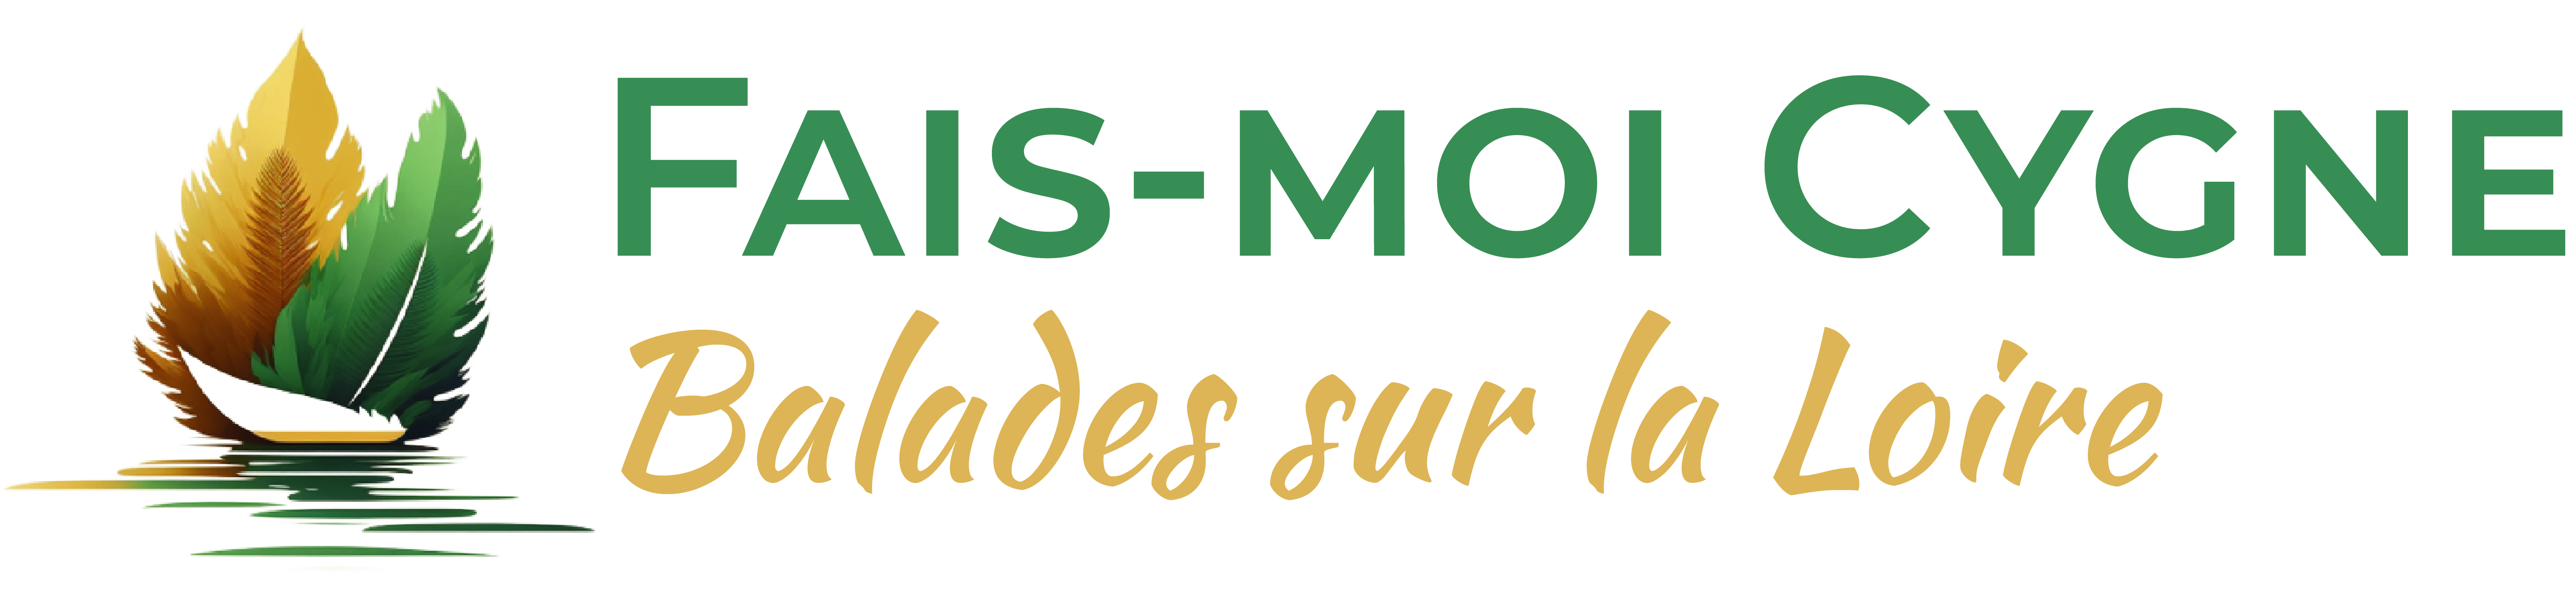 Logo Fais-Moi Cygne, balades sur la Loire